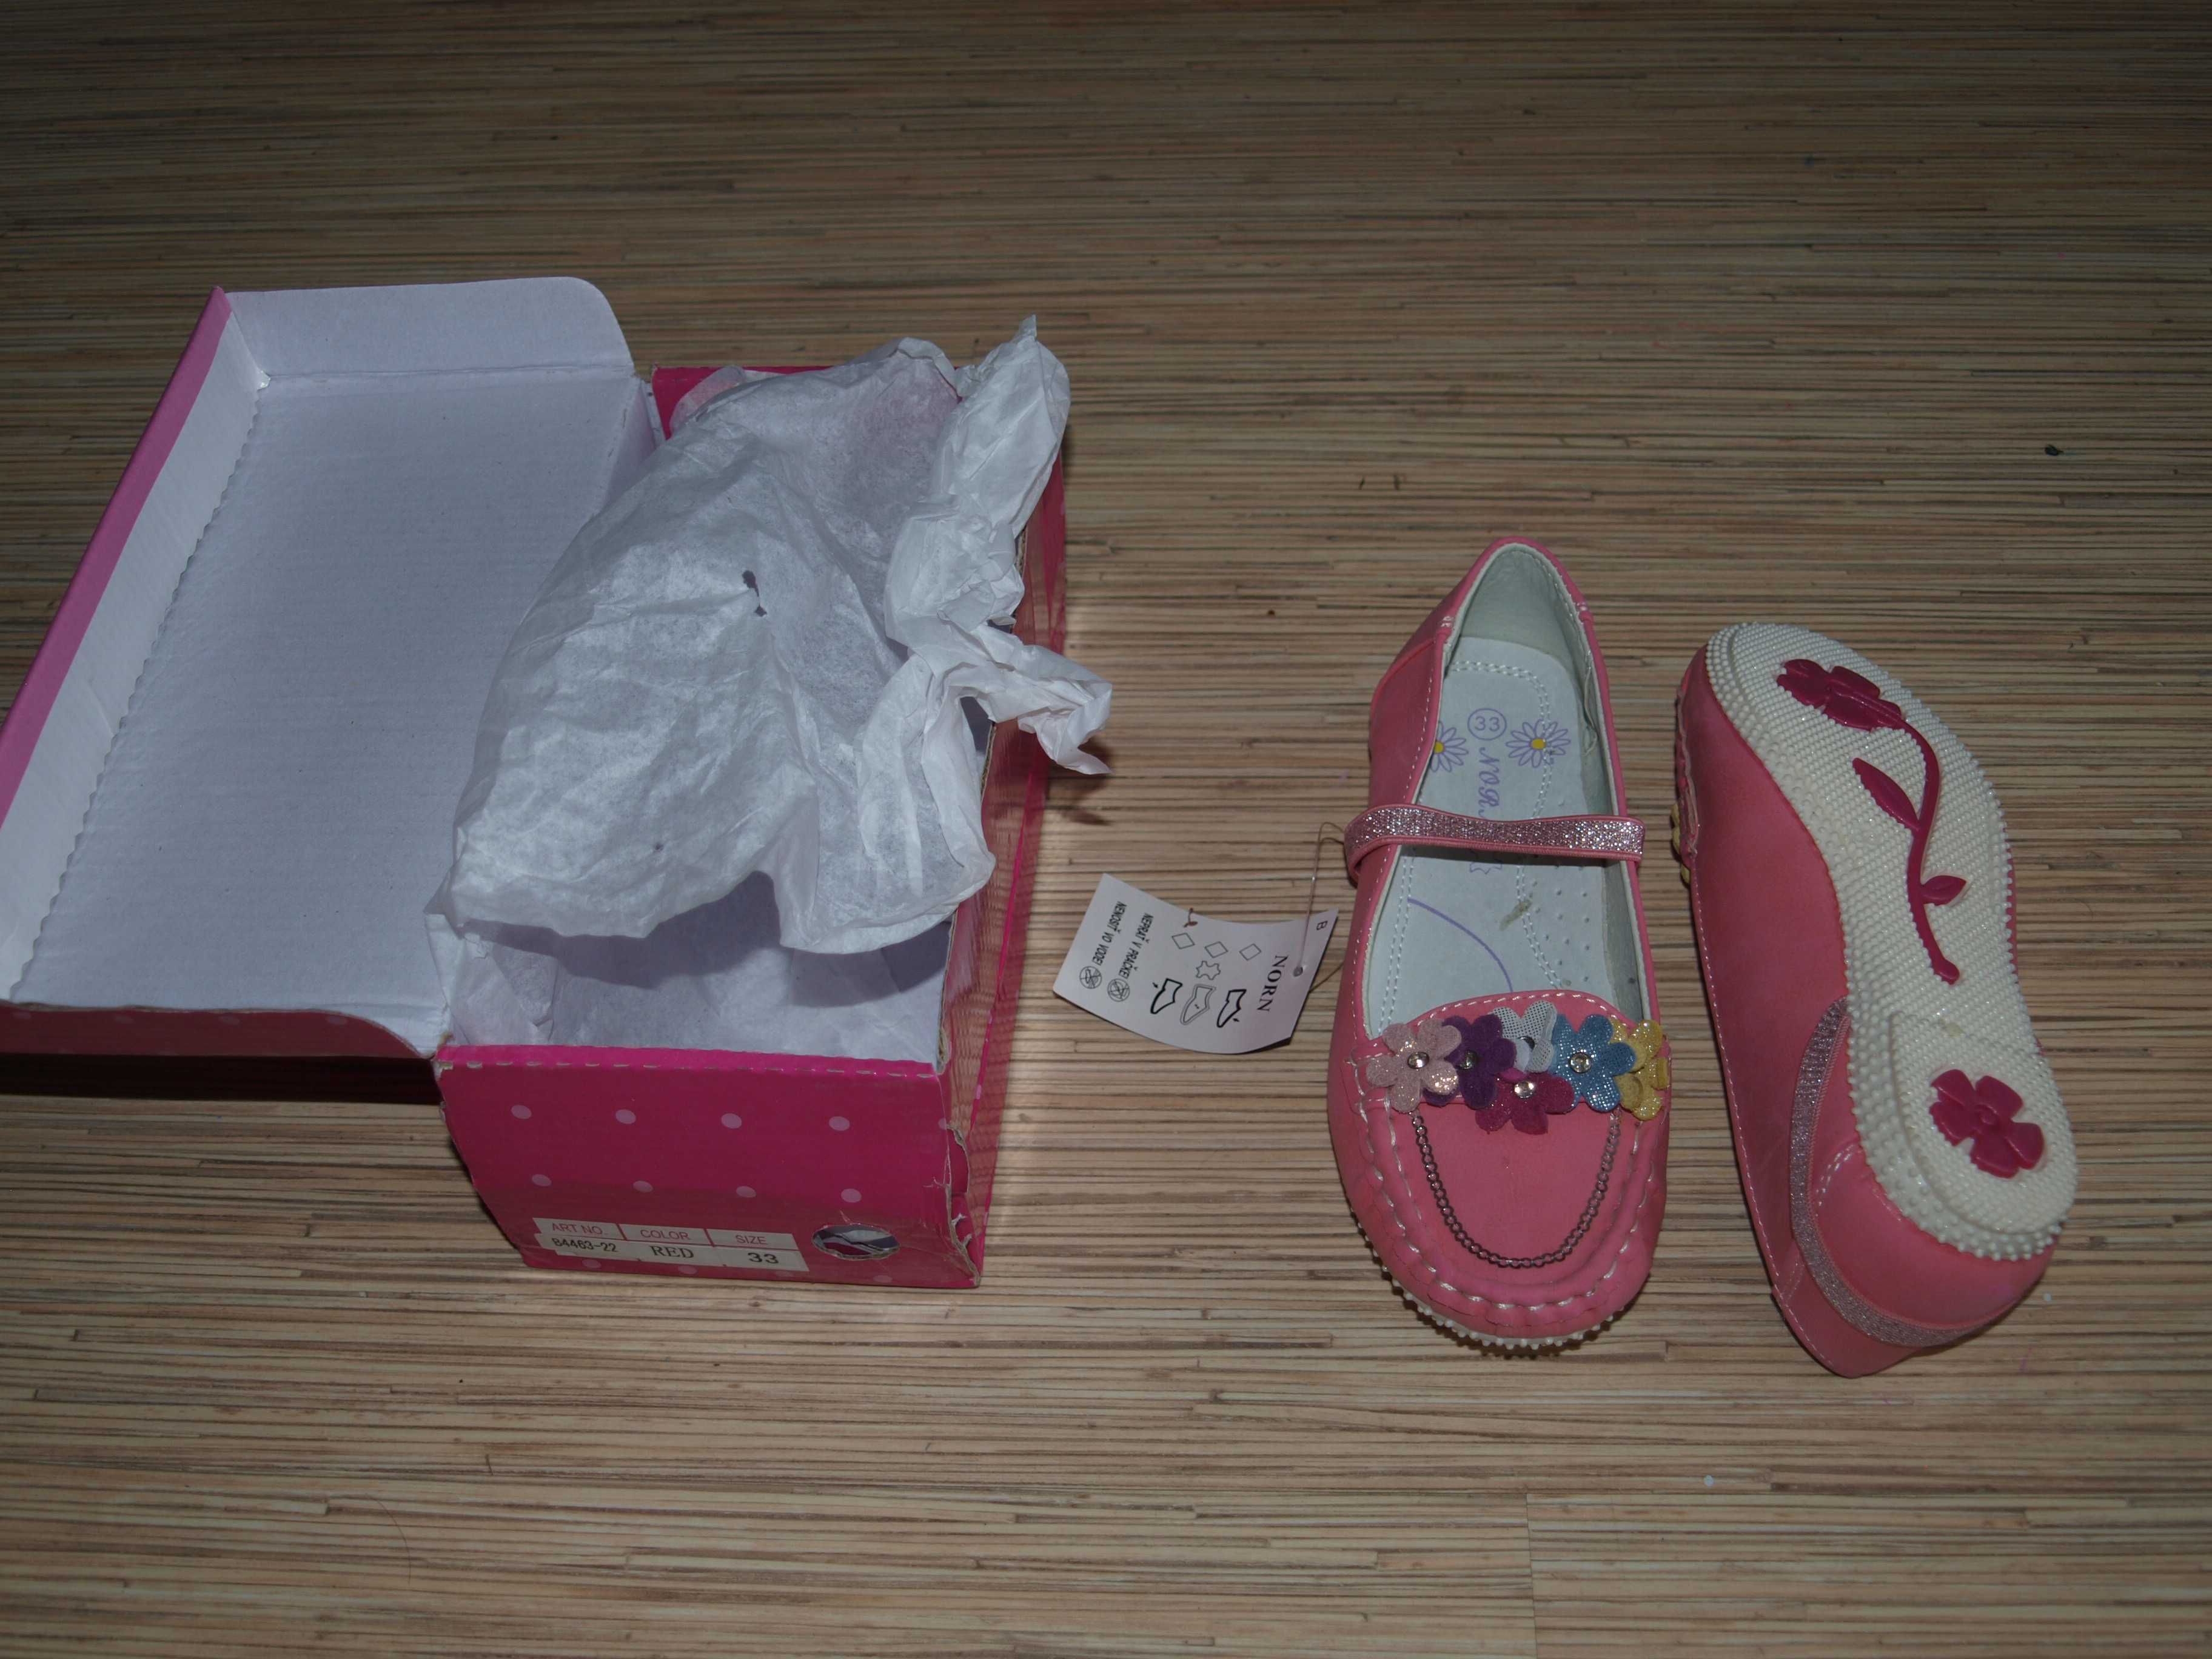 Buty mokasynki baletki różowe dla dziewczynki r.33 nowe!!!